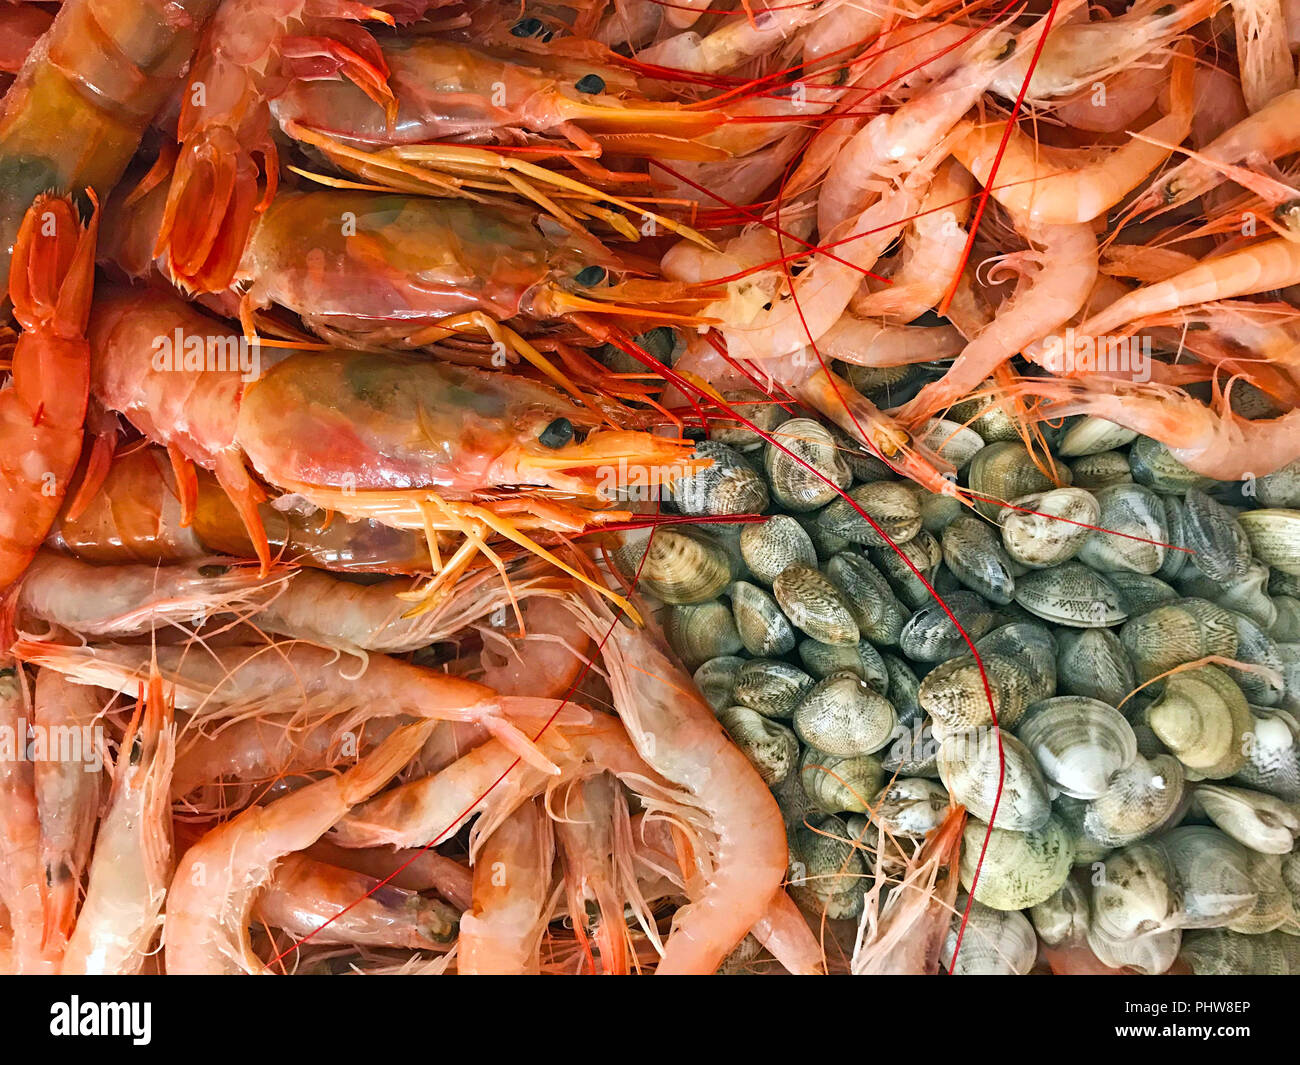 Différents types d'srimps et les coquillages dans un seul endroit Banque D'Images